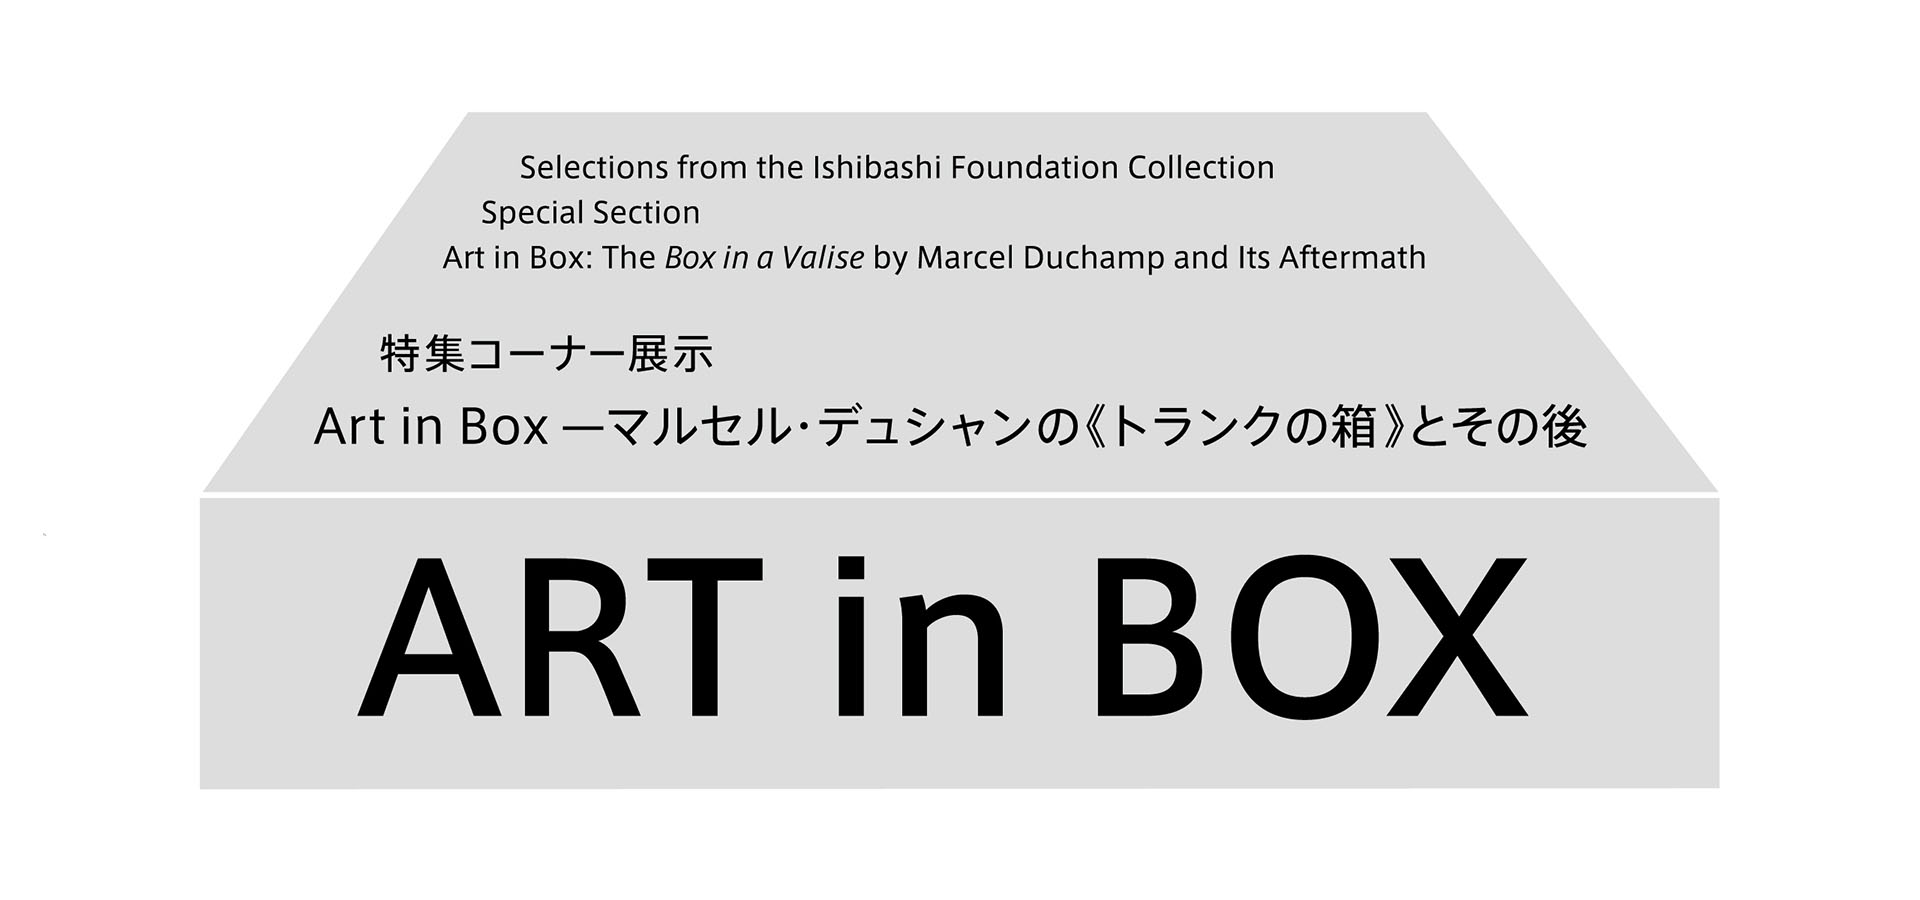 石橋財団コレクション選　特集コーナー展示　Art in Box ーマルセル・デュシャンの《トランクの箱》とその後